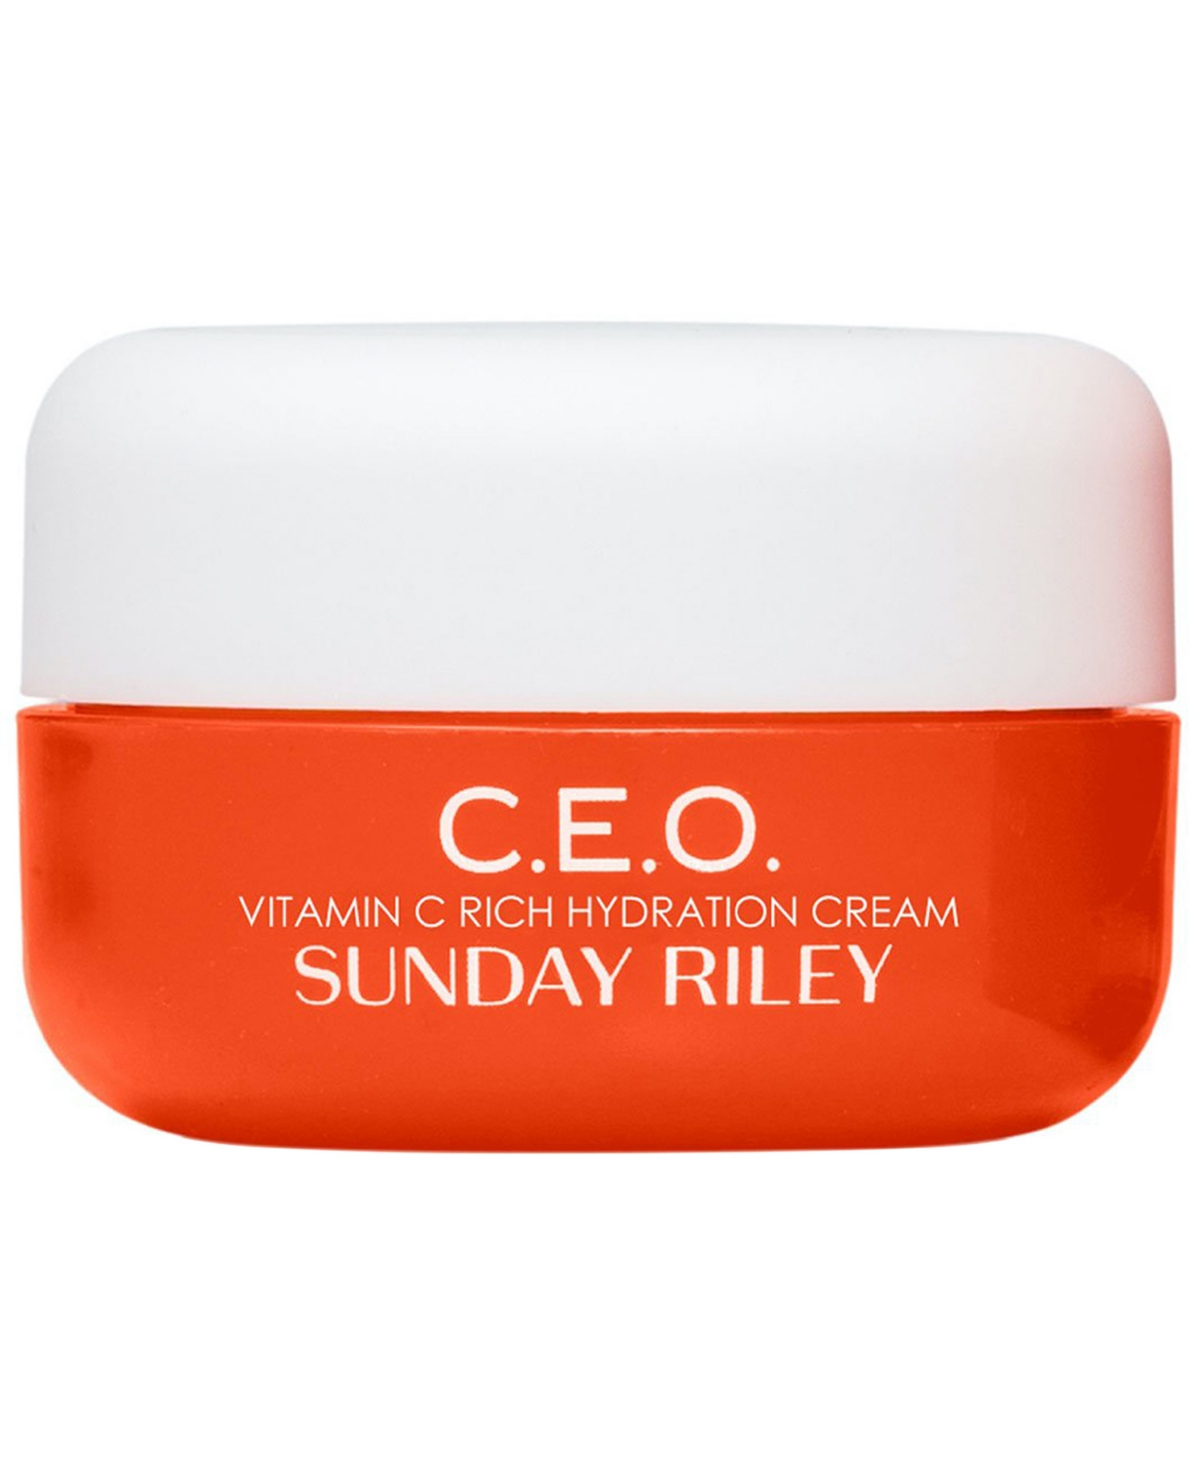 C.E.O. Vitamin C Rich Hydration Cream, 0.5 oz.